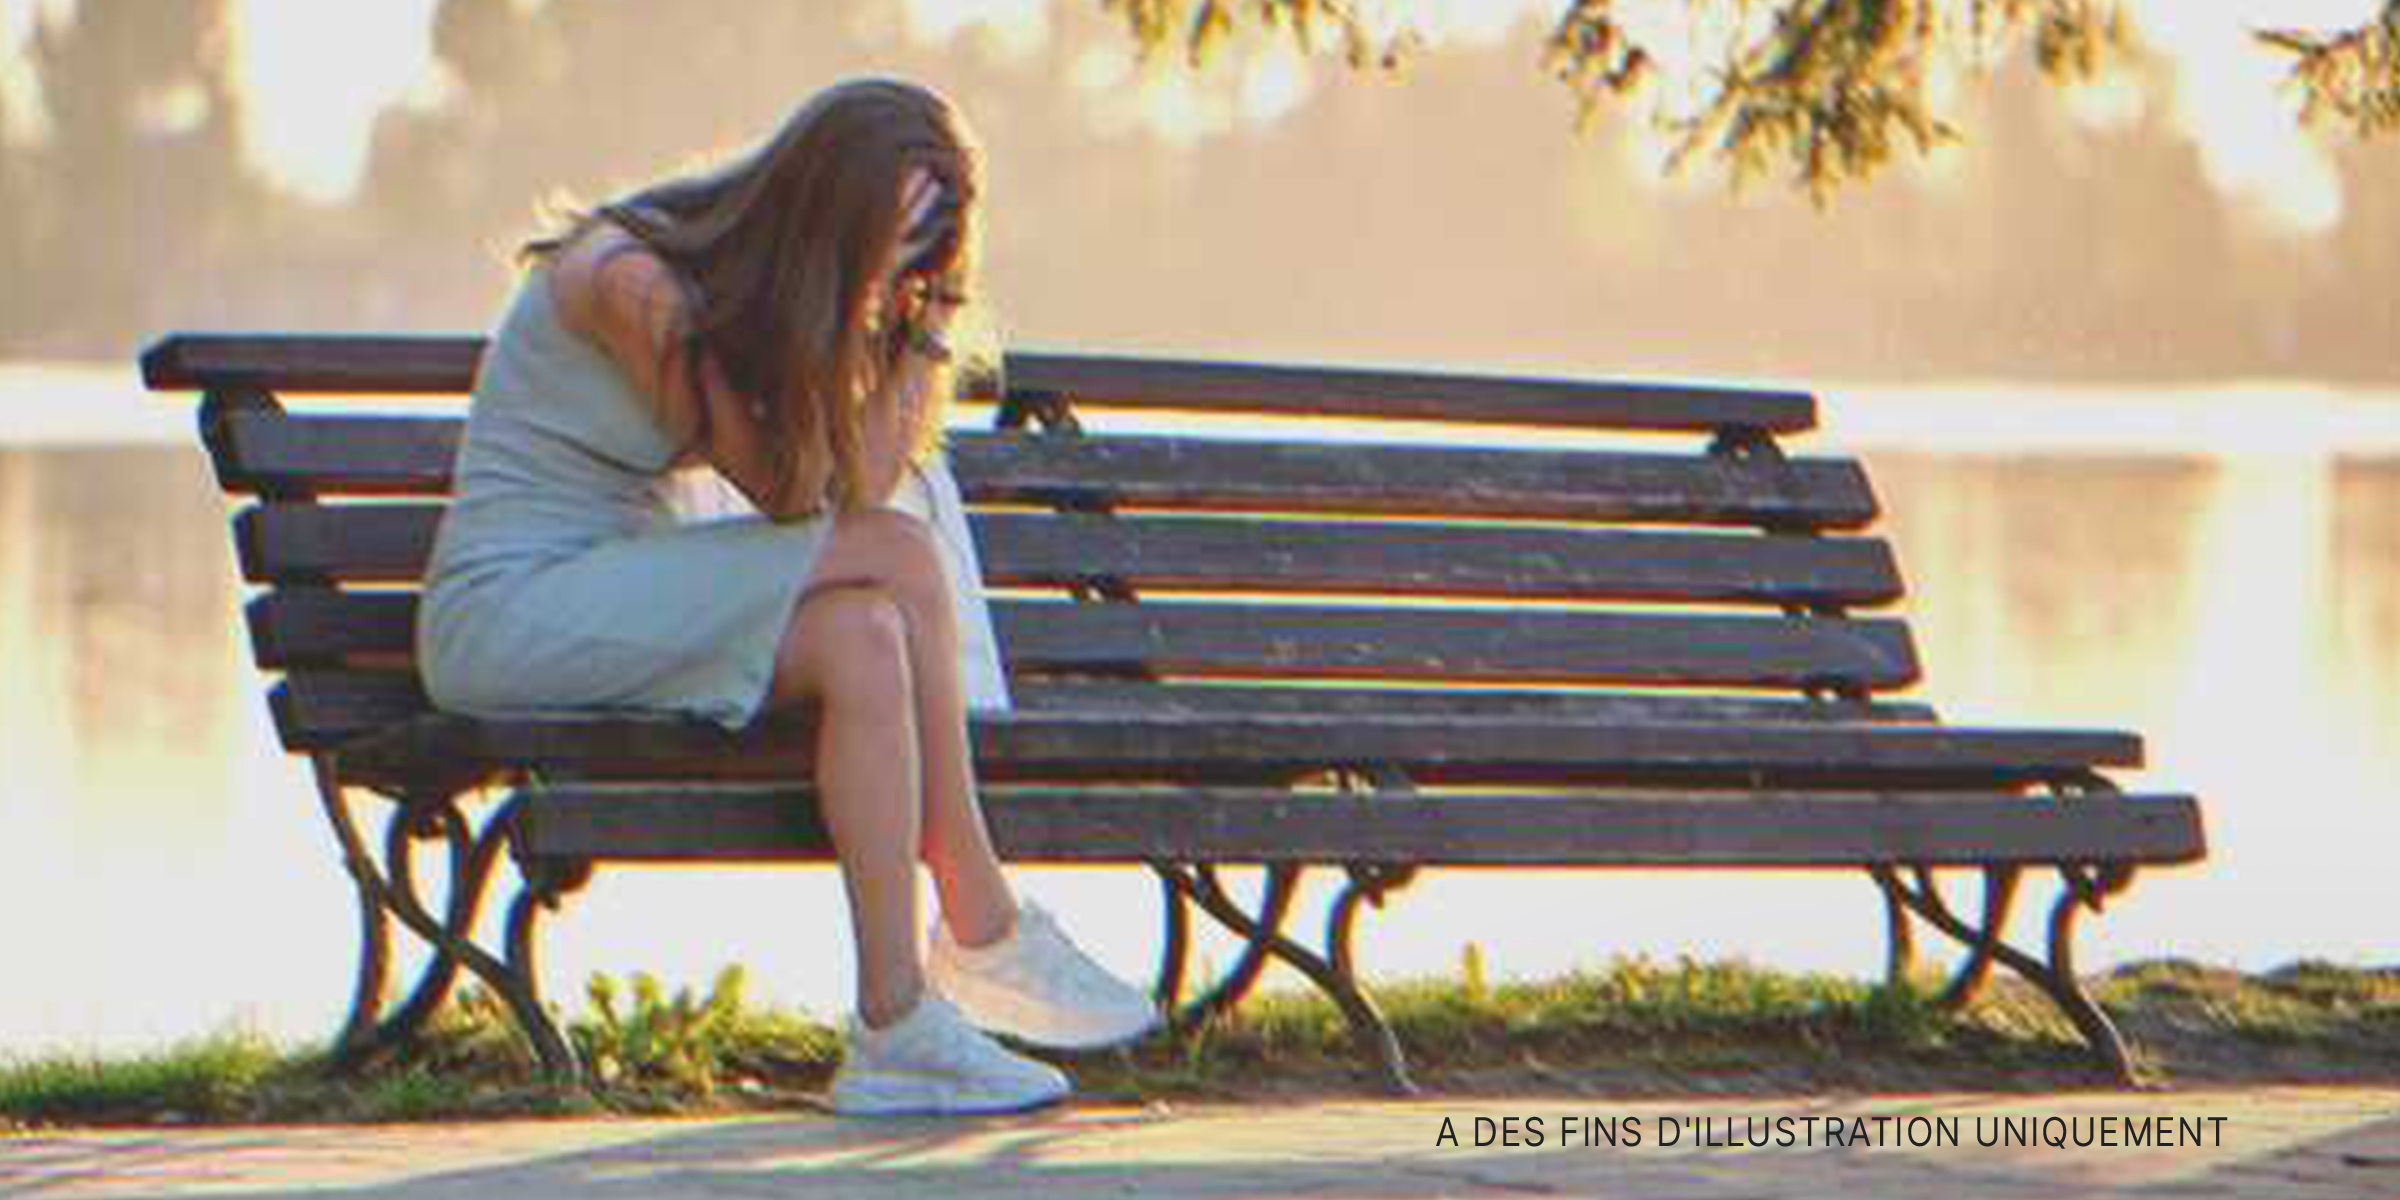 Une femme pleurant sur un banc public | Source : Shutterstock